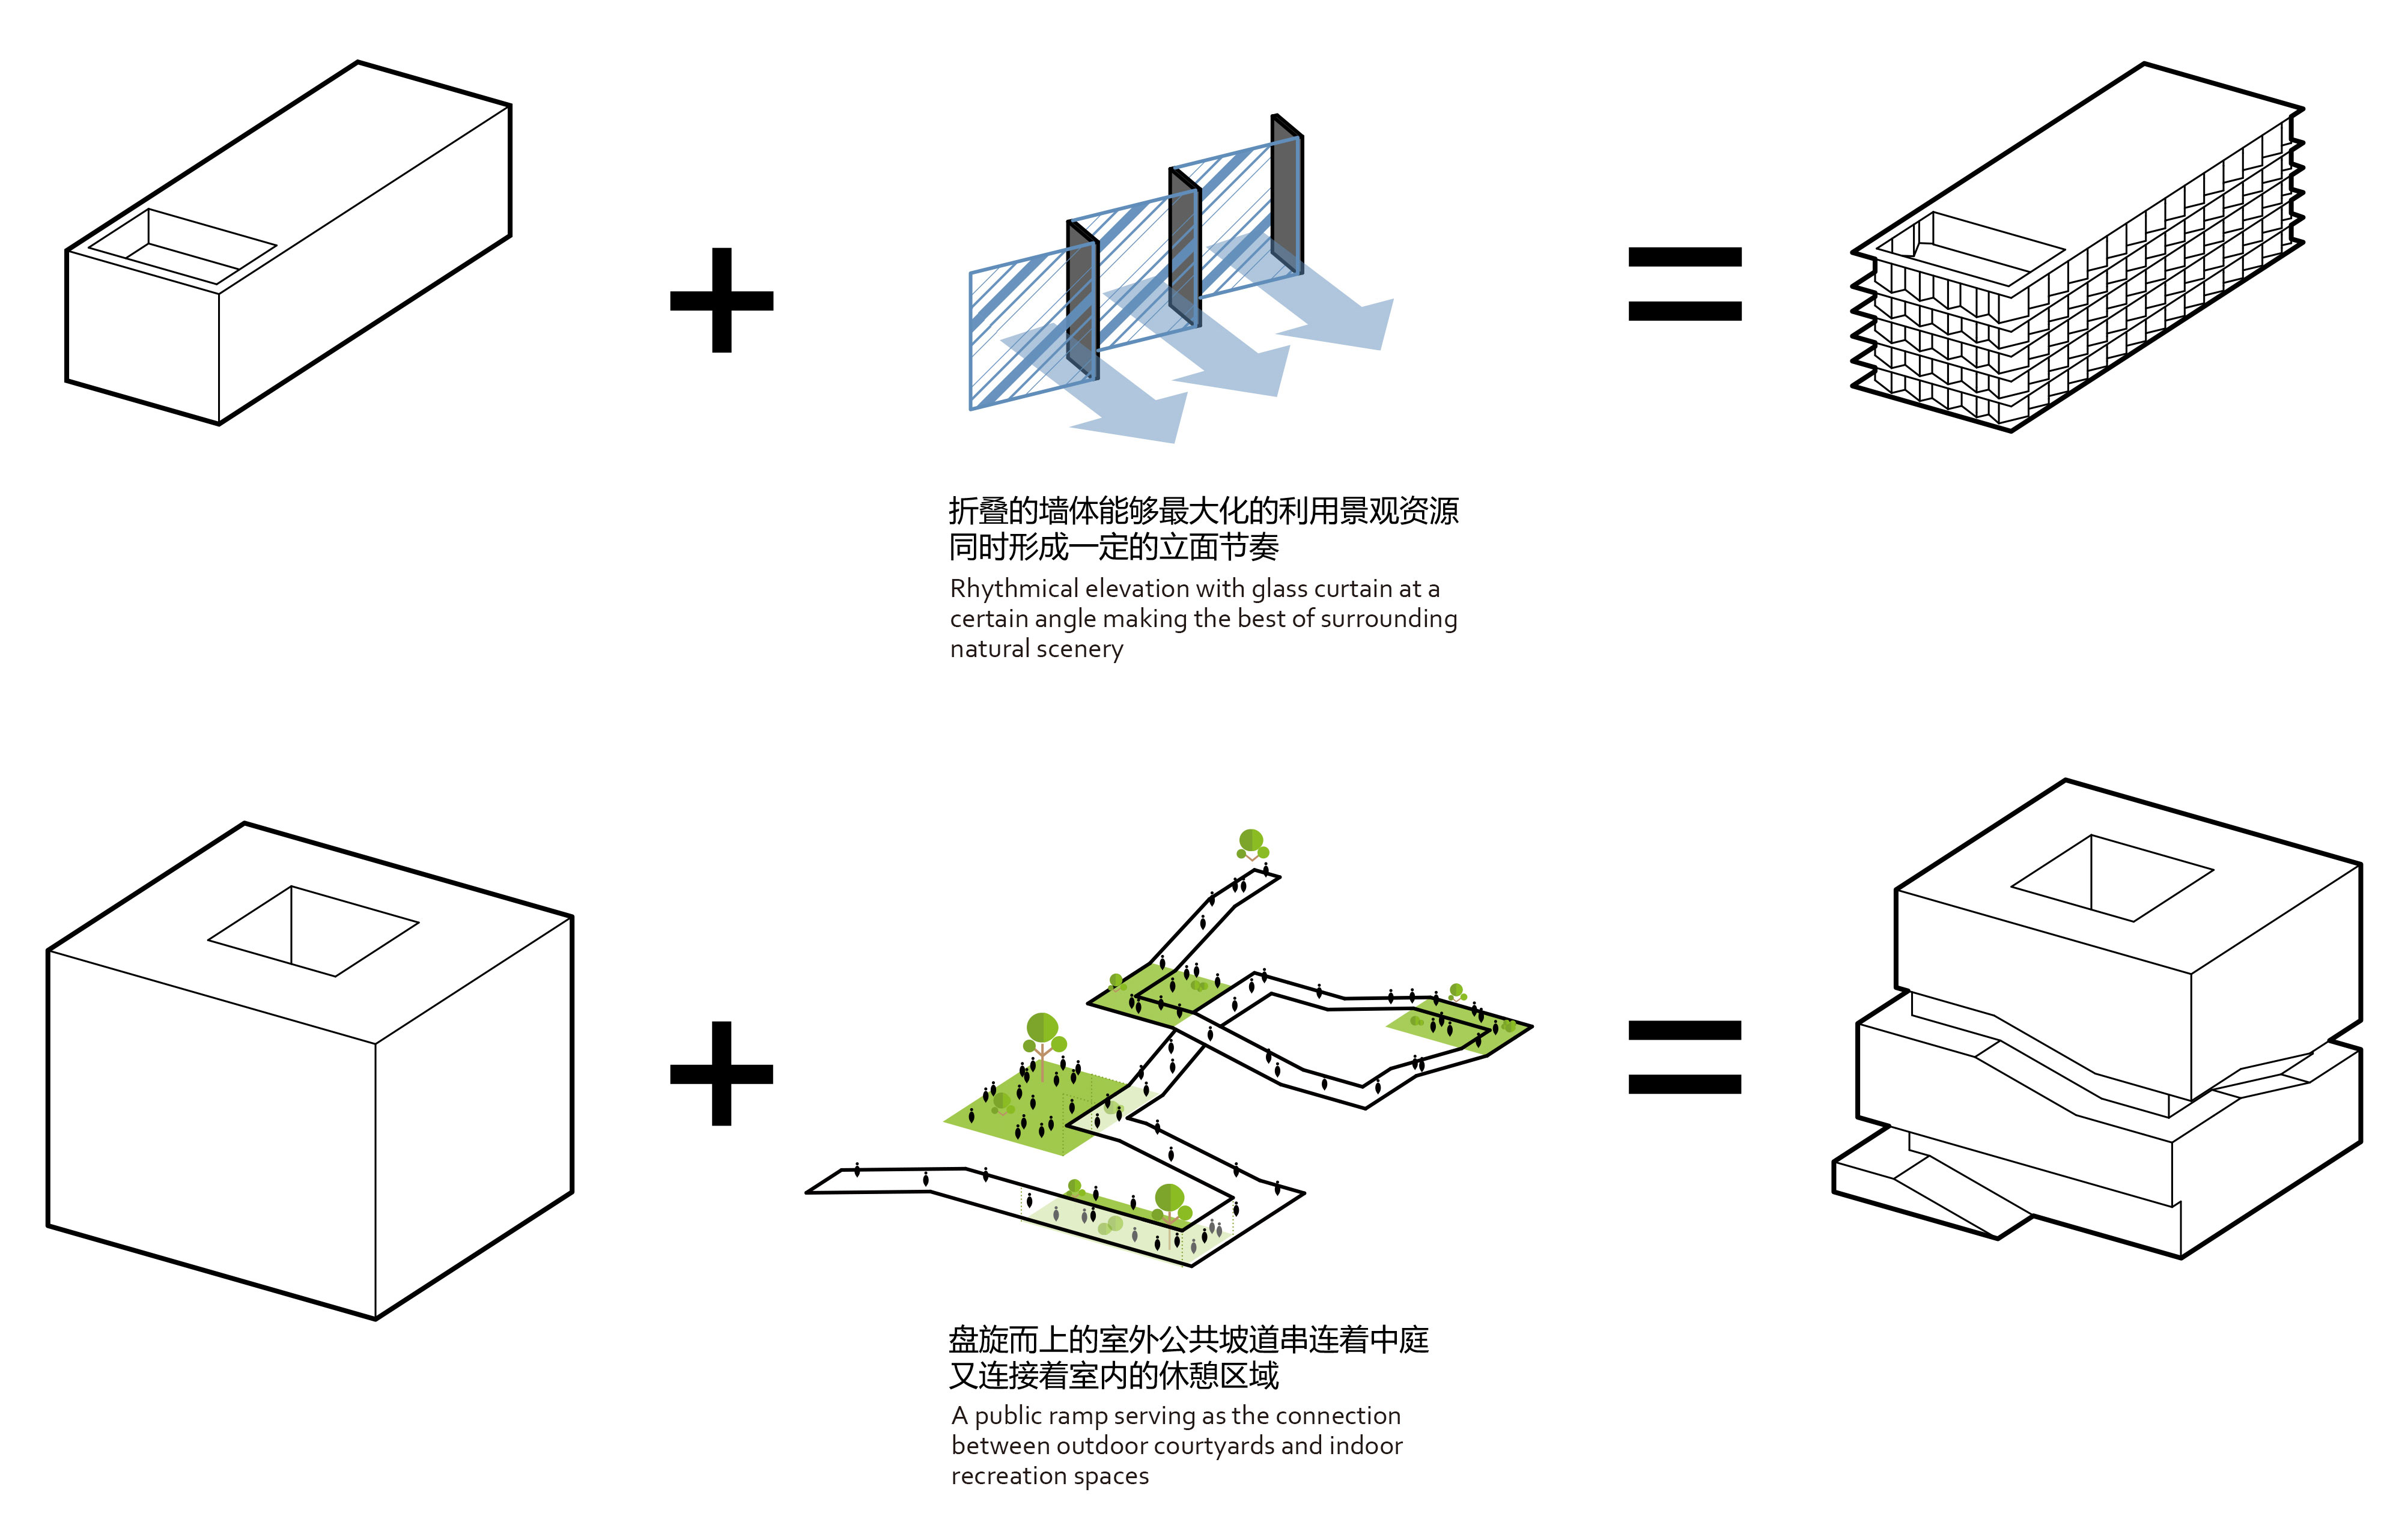 上海临港新城张江中心国际设计竞赛第一名方案 / EID Architecture